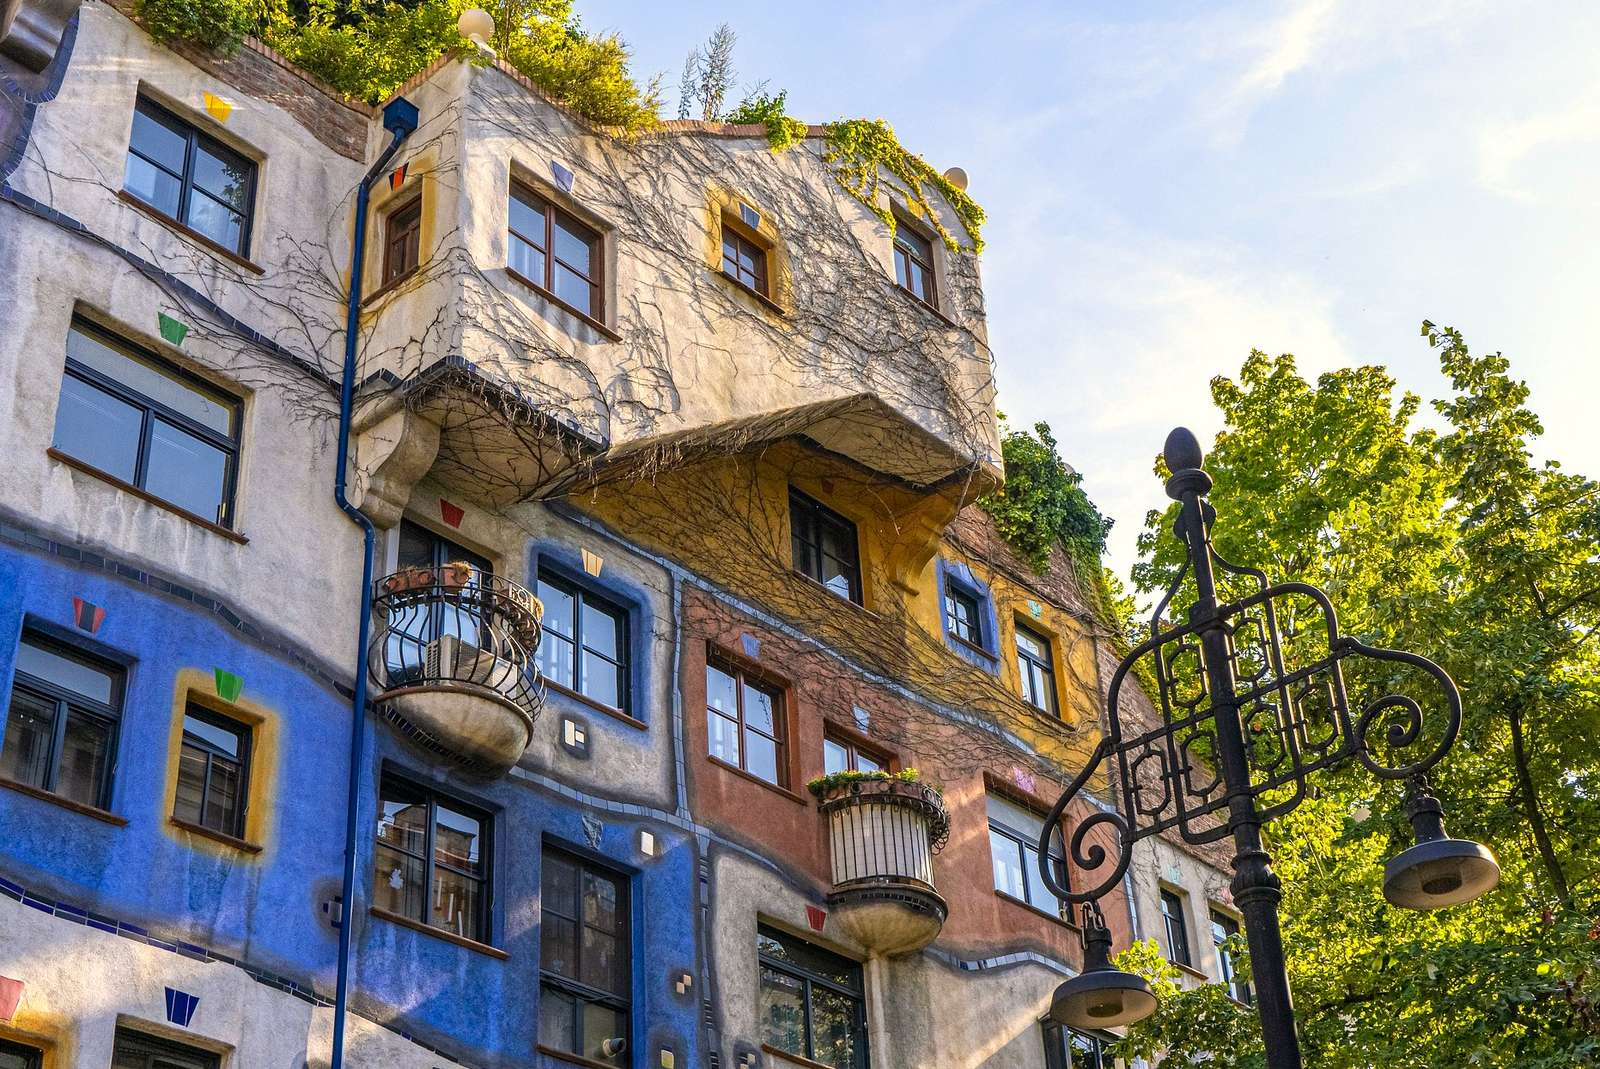 Interessant huis in Wenen (Oostenrijk) online puzzel